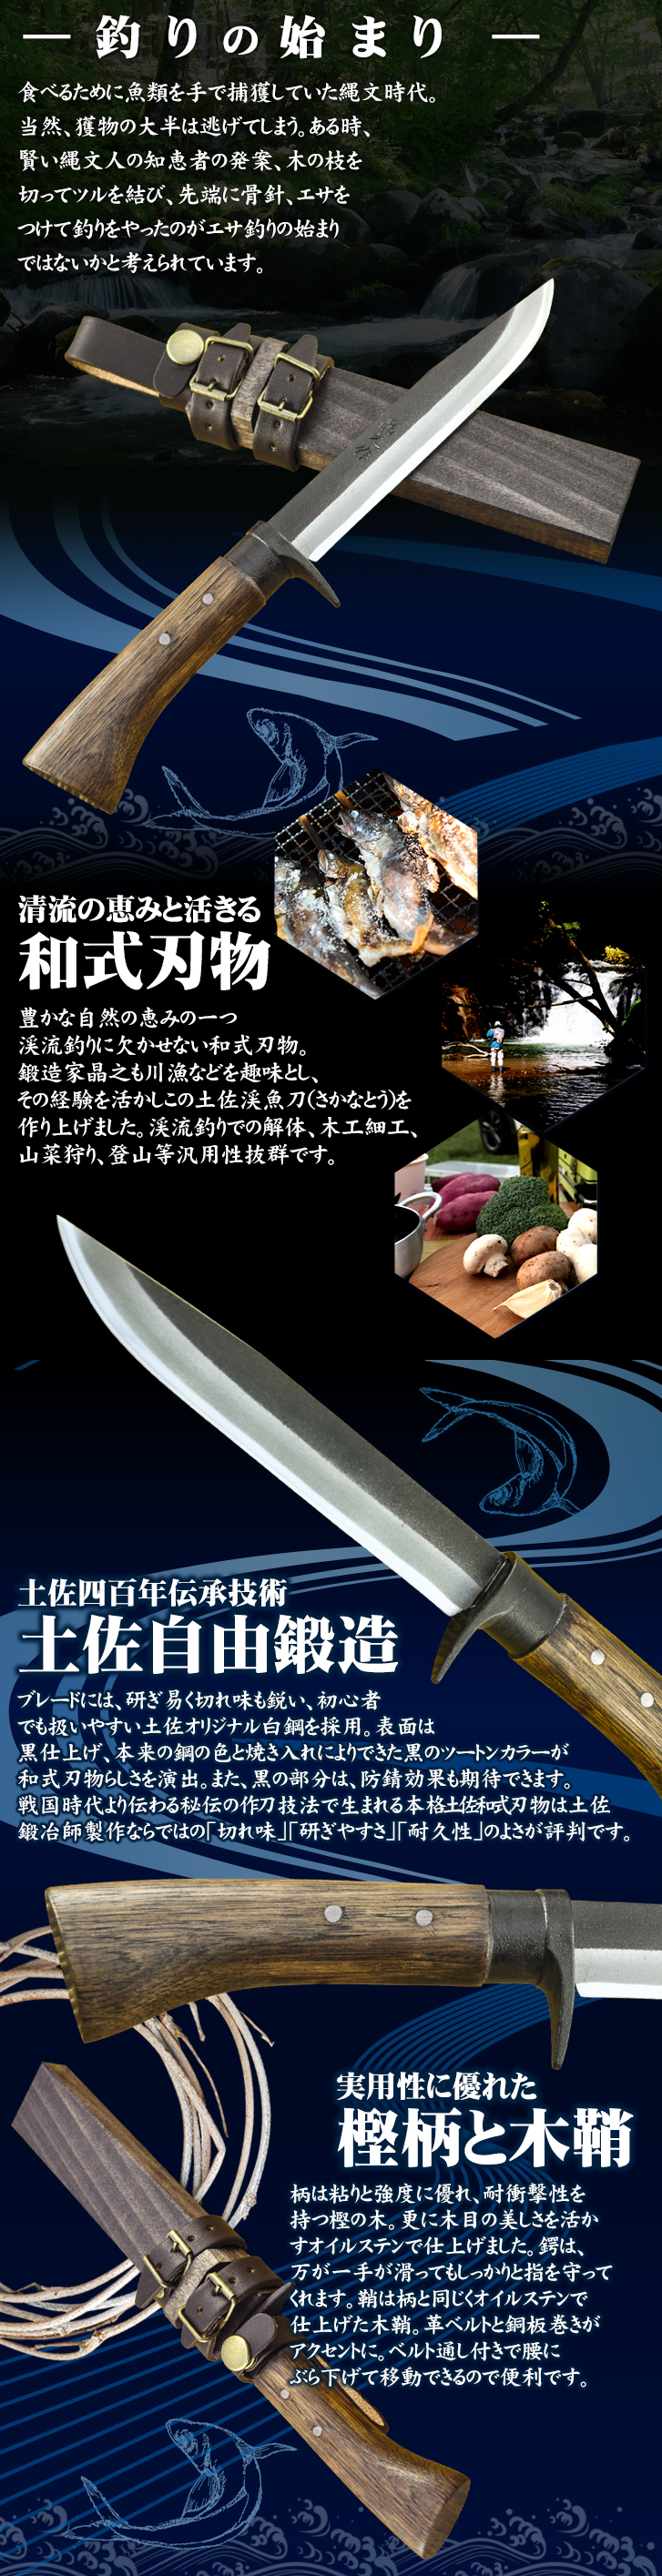 土佐魚渓刀